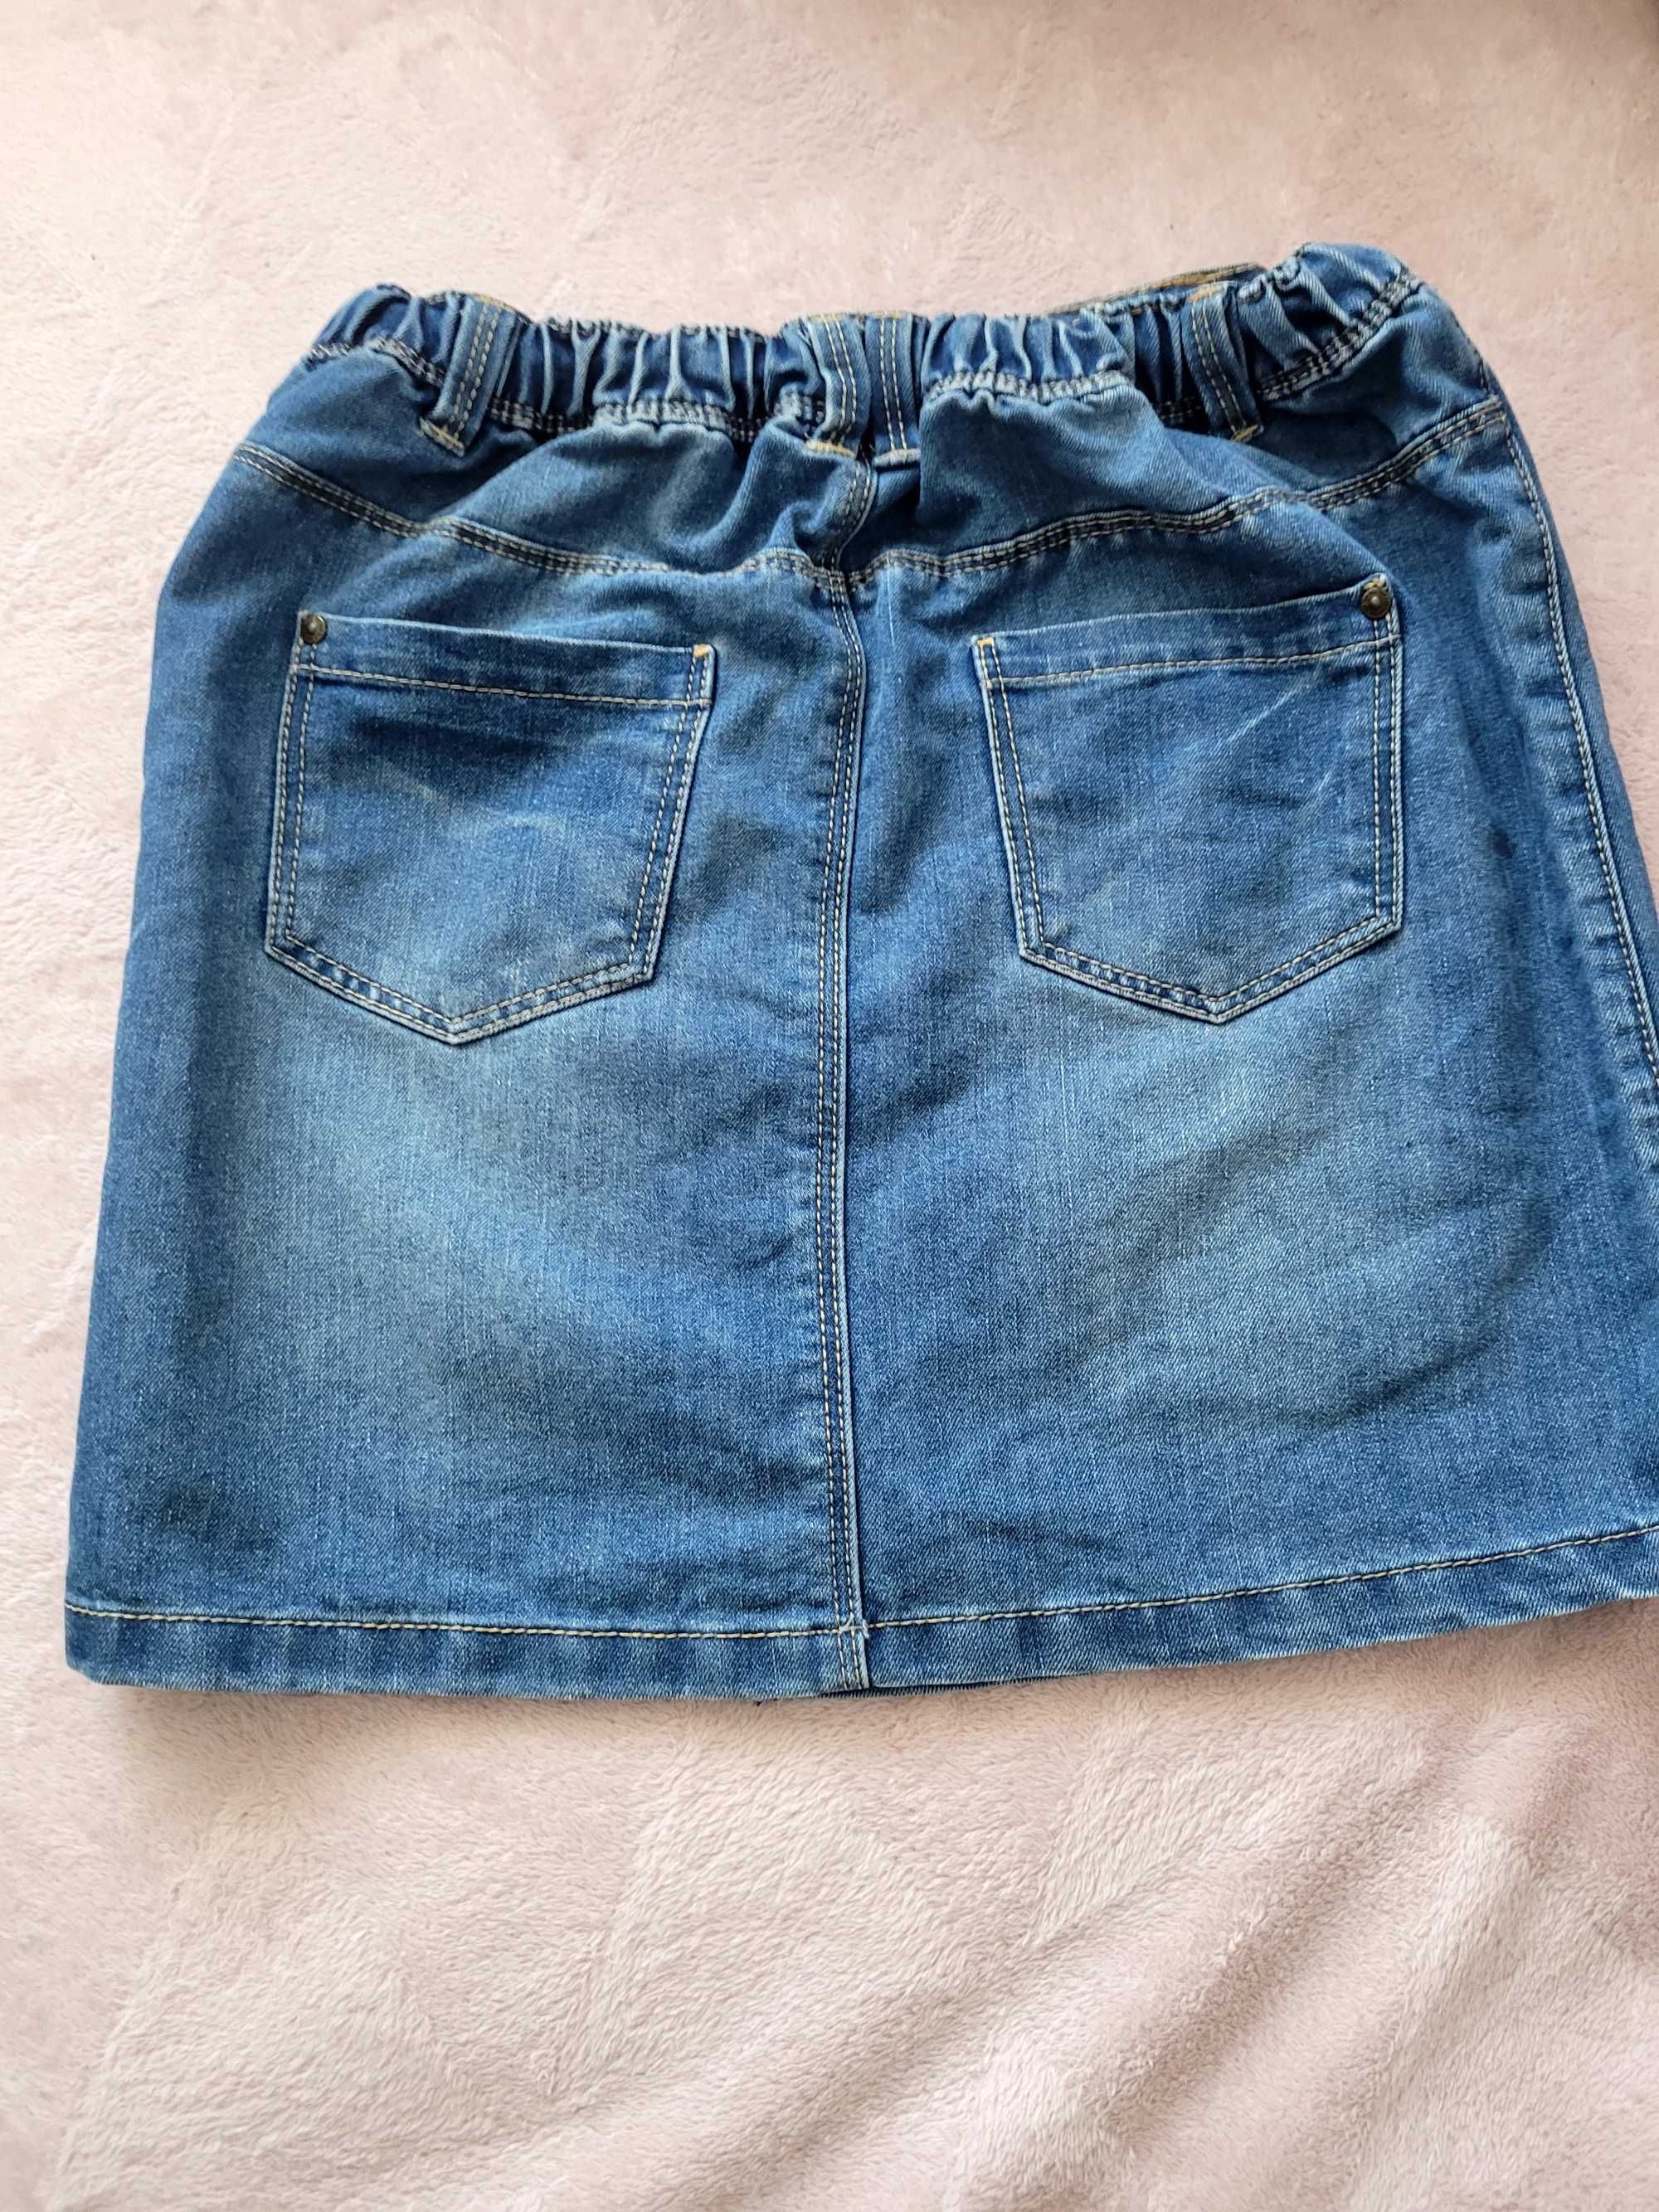 Spodniczka jeans 140